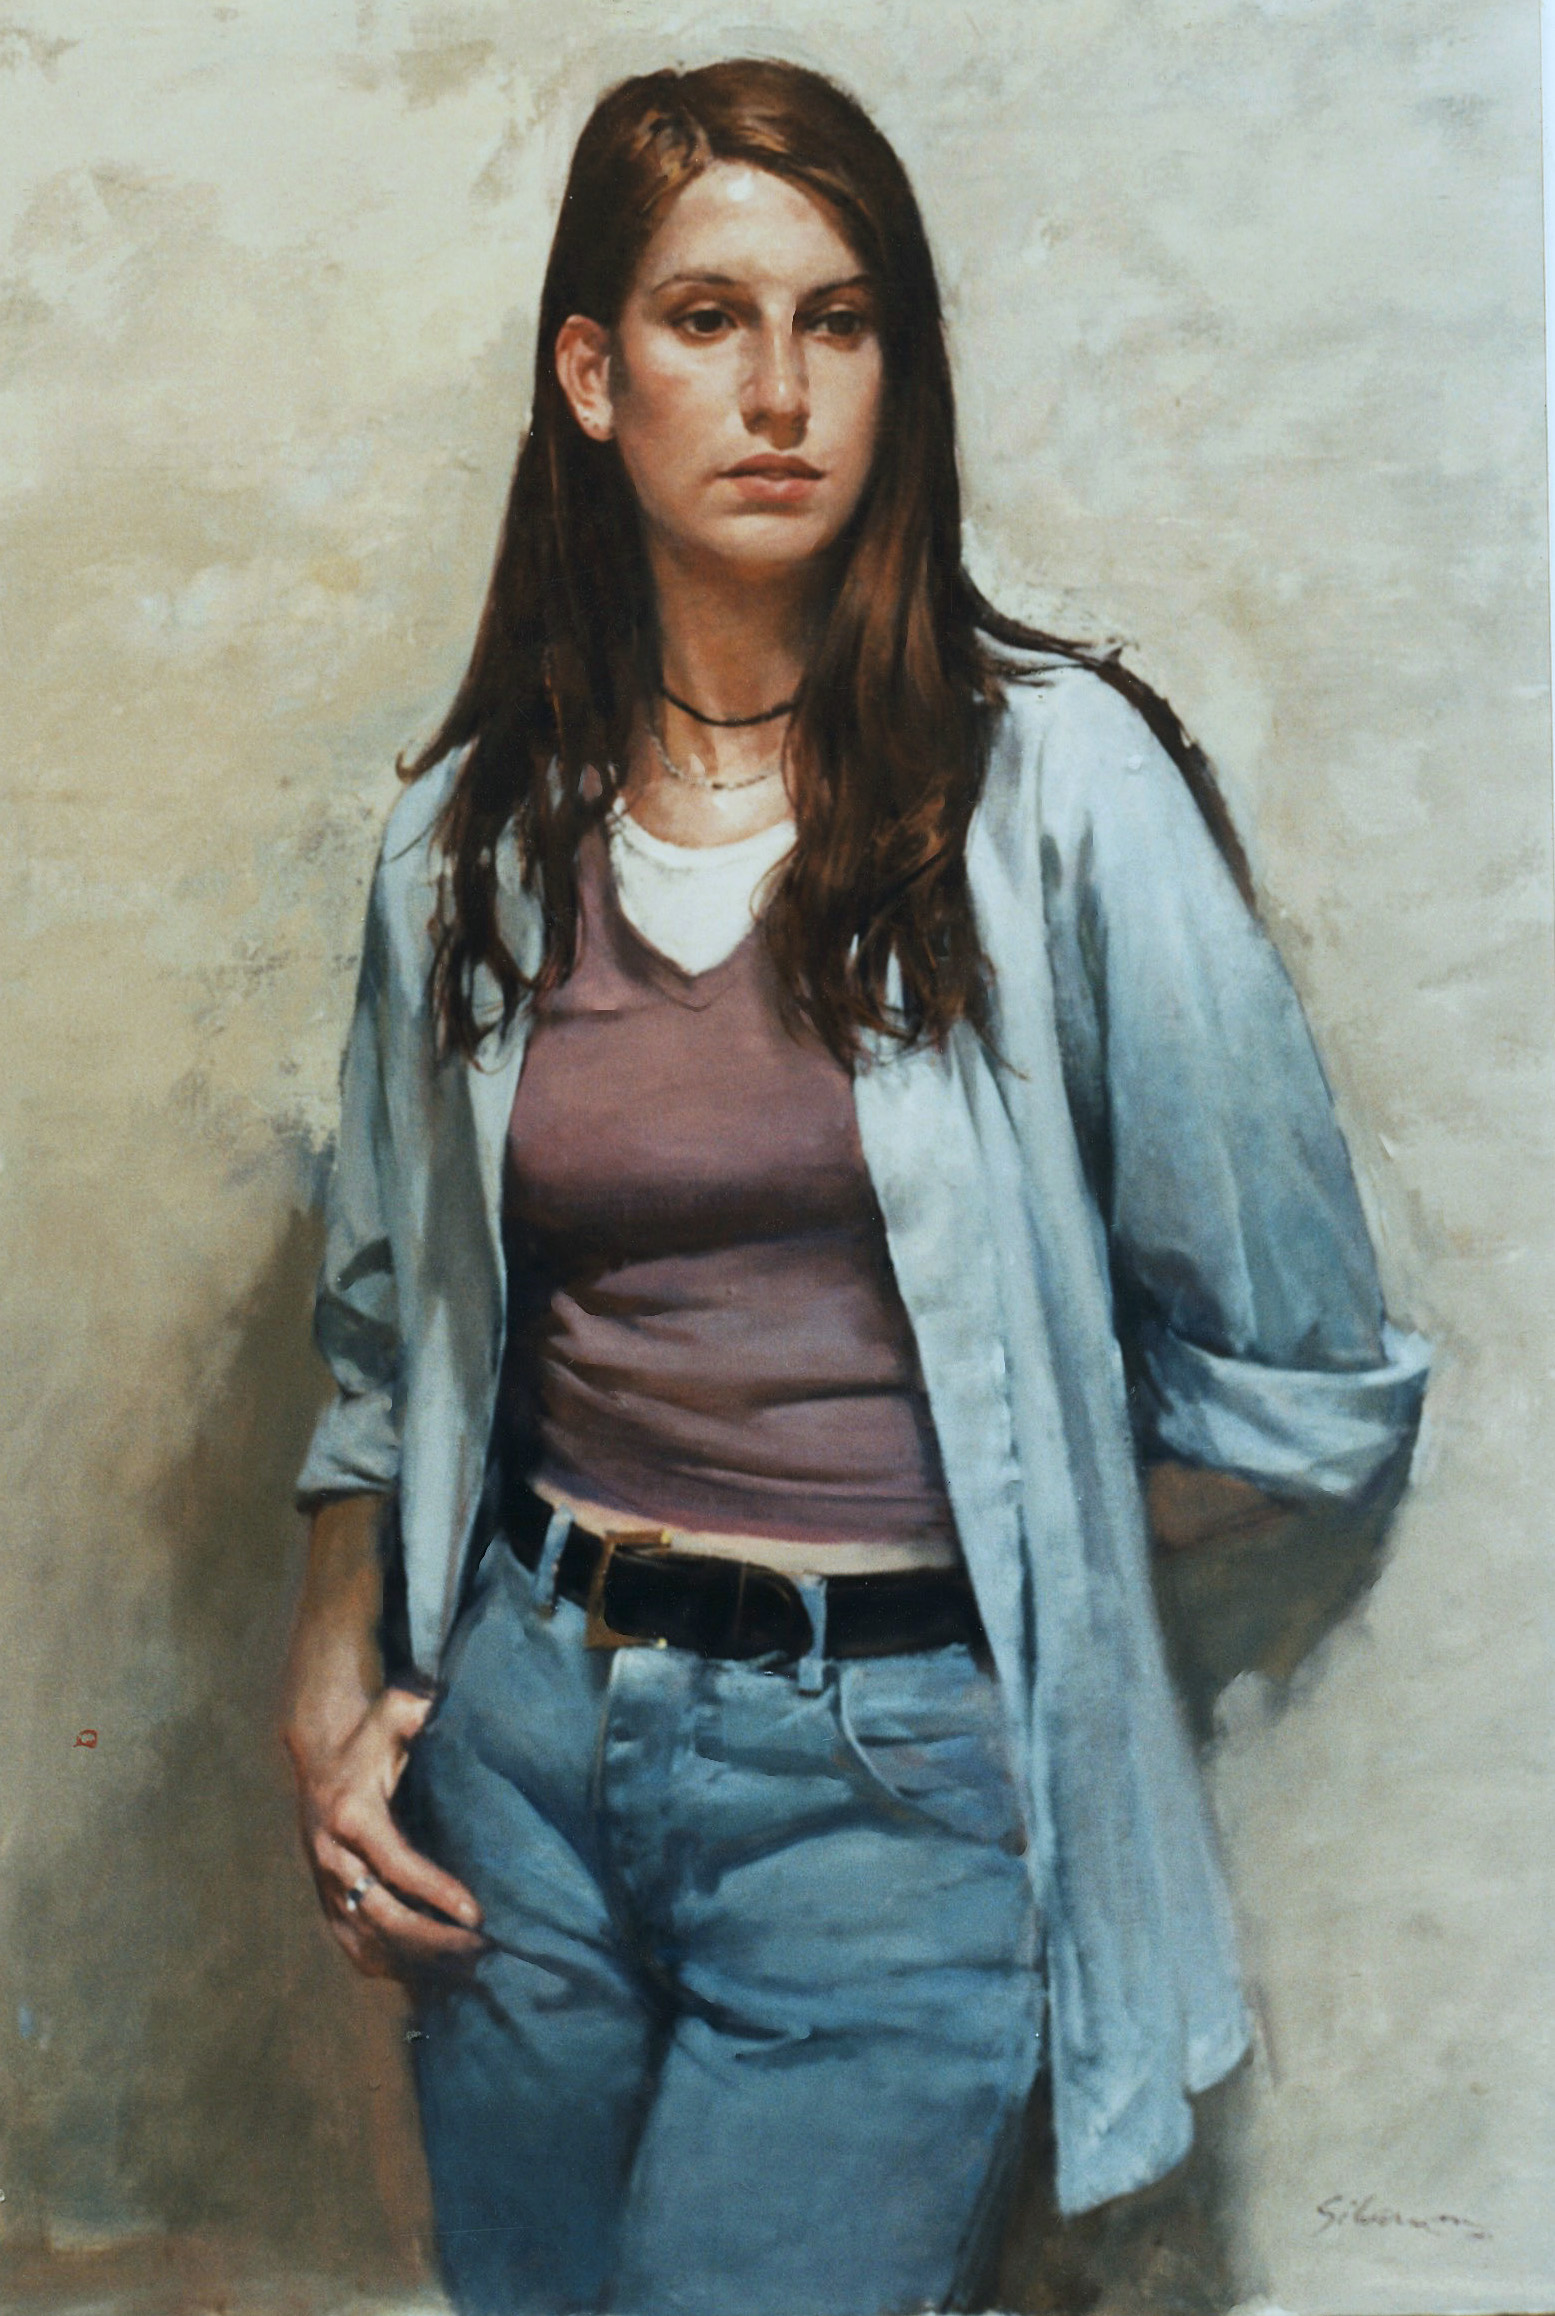 Alexandra Nicholas, 1998